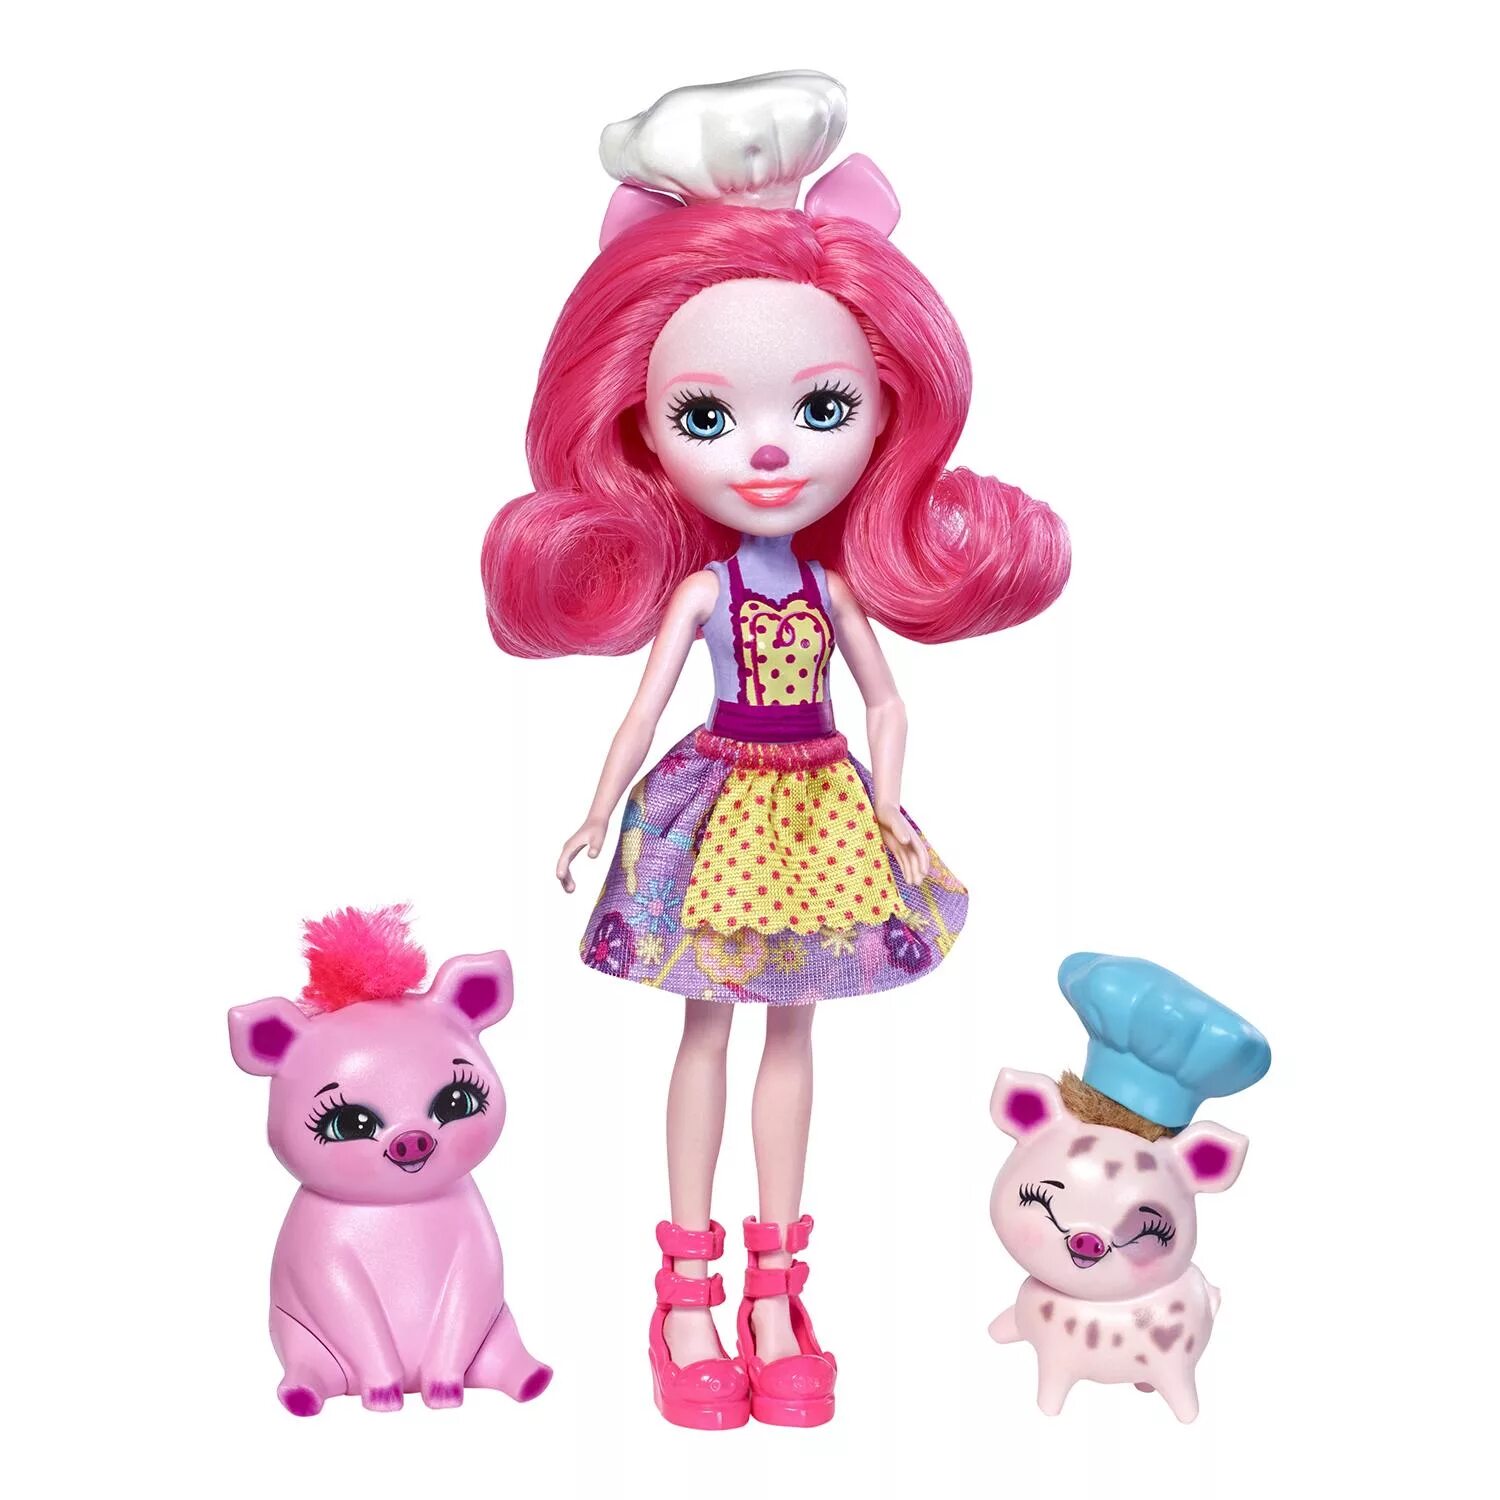 Набор с куклой Enchantimals друзья пекари Пэтти Пиг, 15 см, fjj28. Enchantimals куклы Свинка. Энчантималс куклы Свинка. Энчантималс набор Свинка.